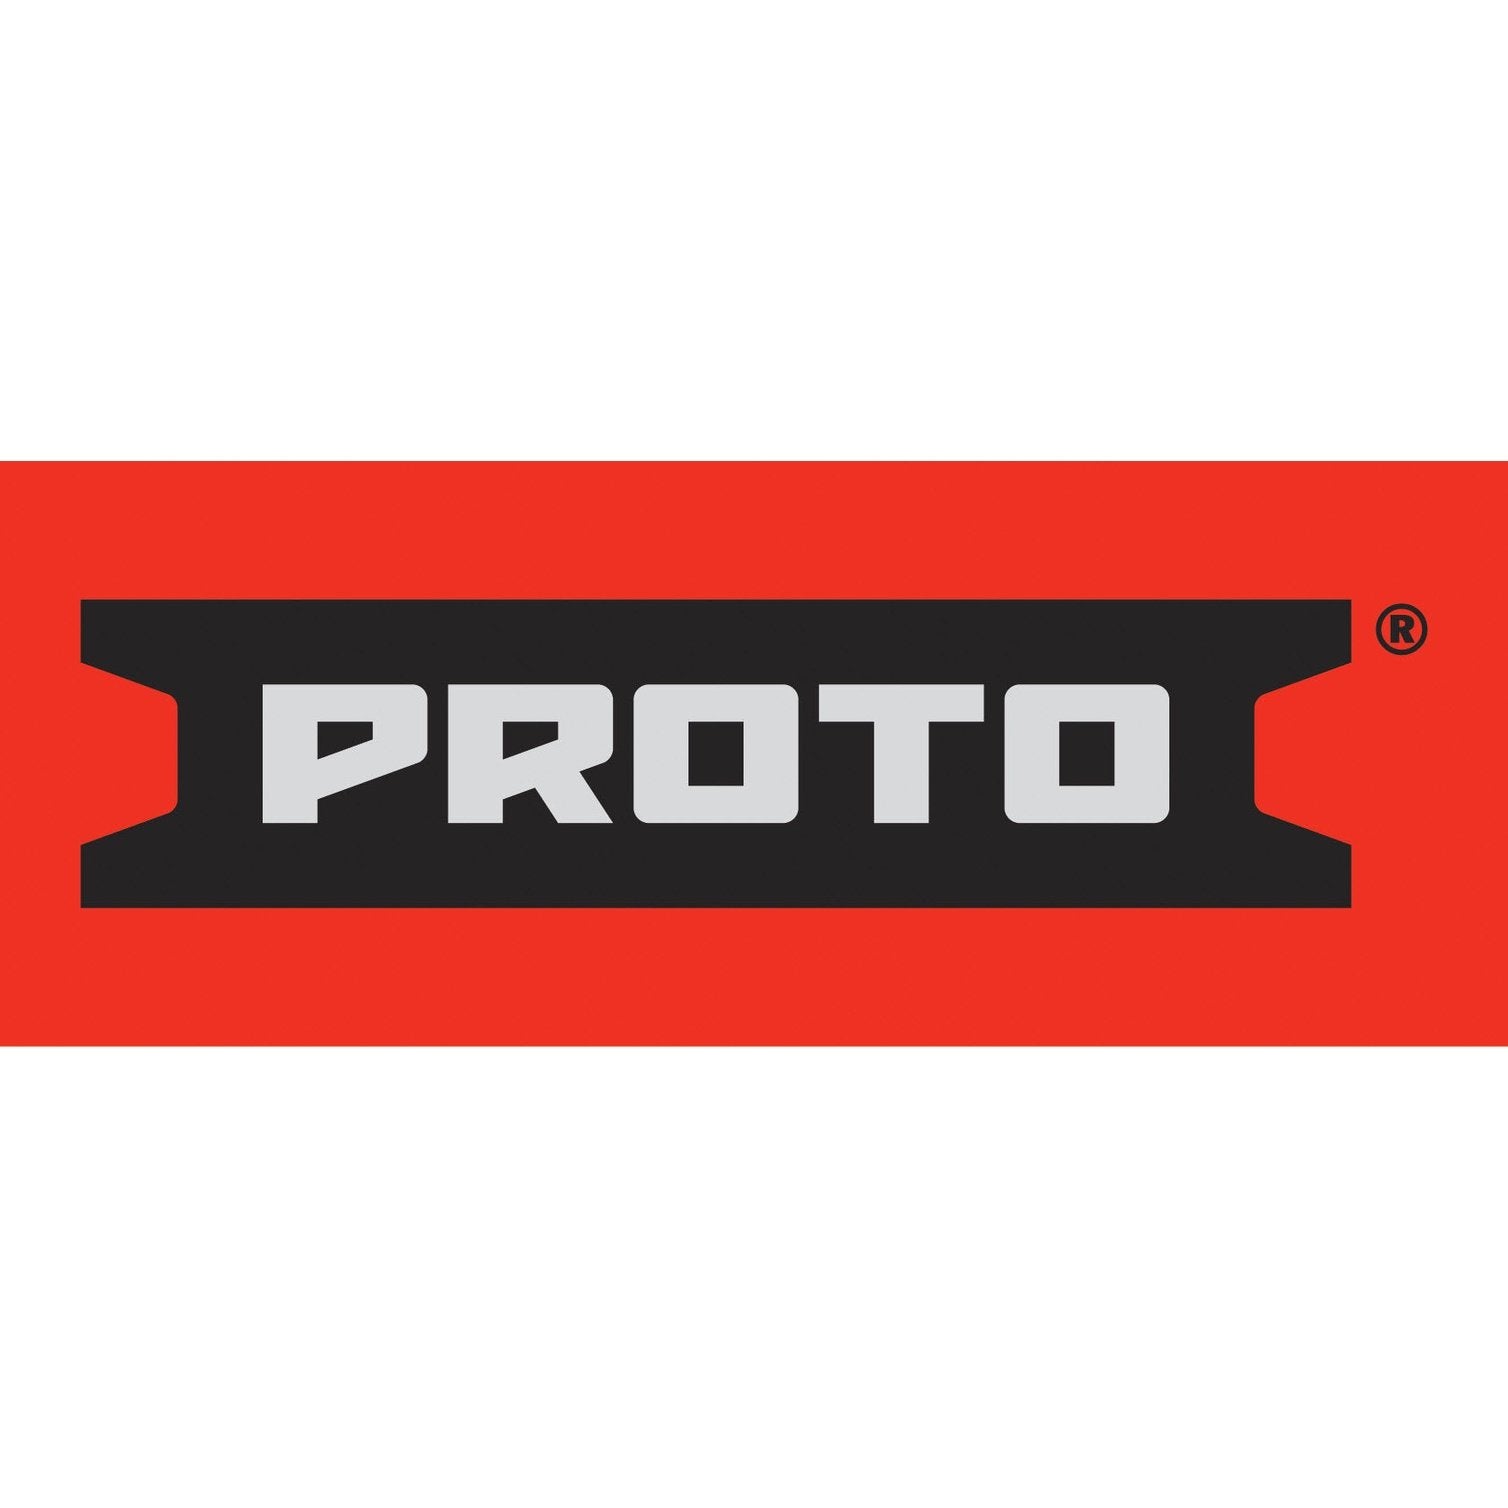 Proto – USA Tool Depot